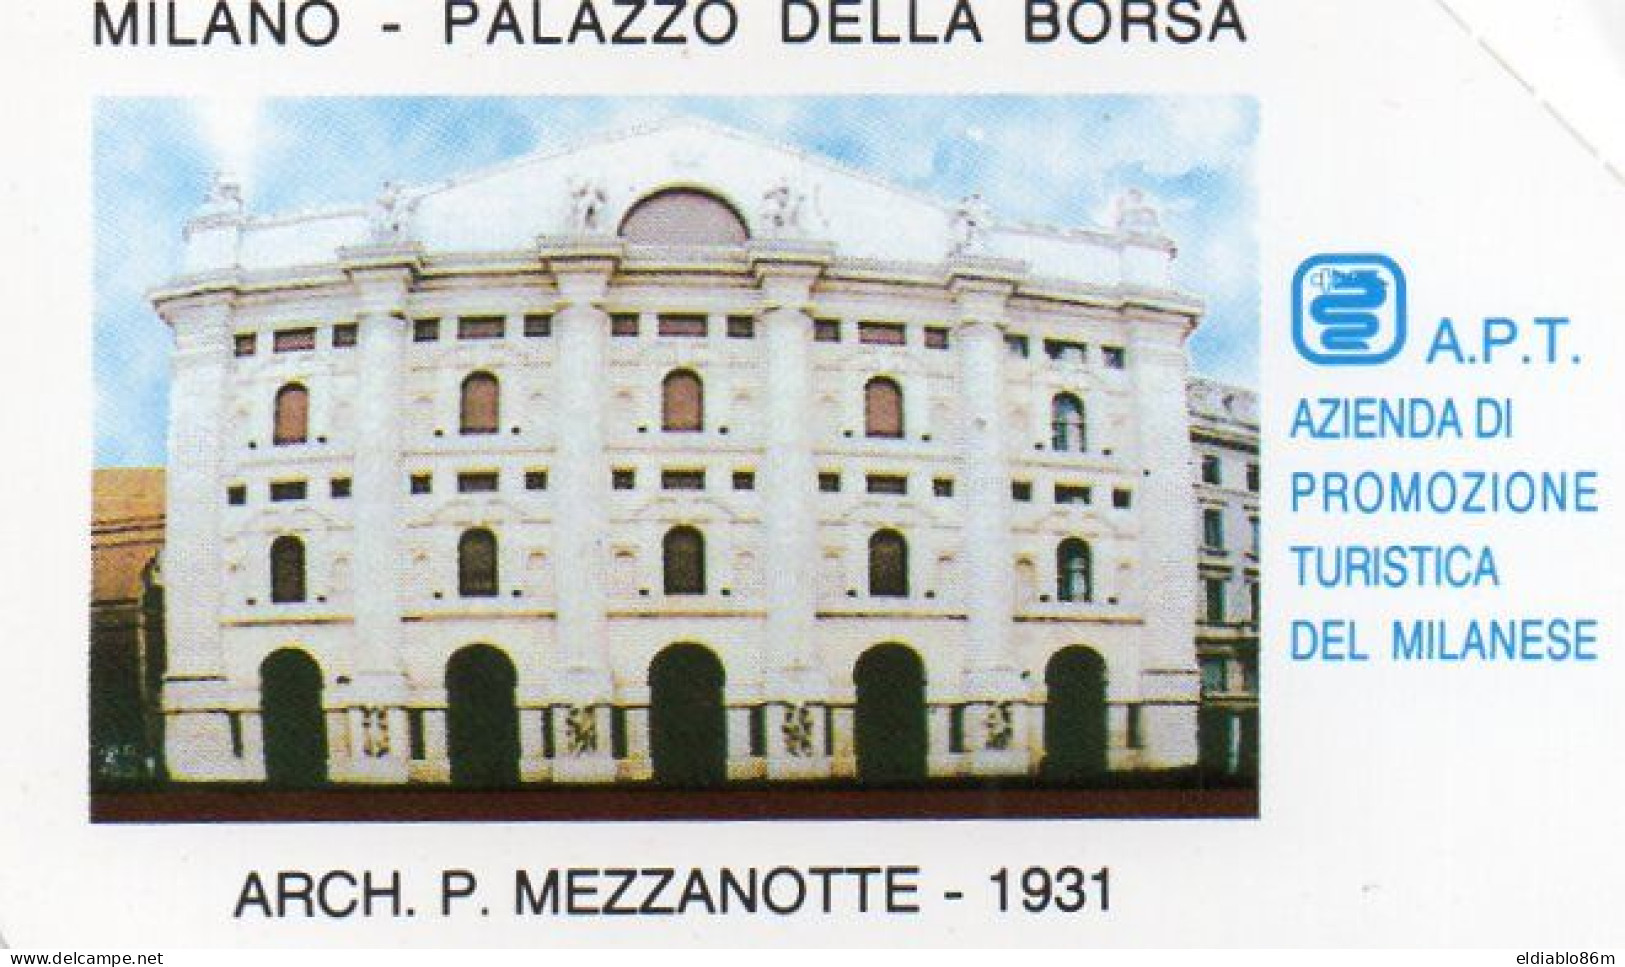 ITALY - MAGNETIC CARD - TELECOM - PRIVATE RESE PUBBLICHE - 312 - MILANO PALAZZO DELLA BORSA - MINT - Private Riedizioni